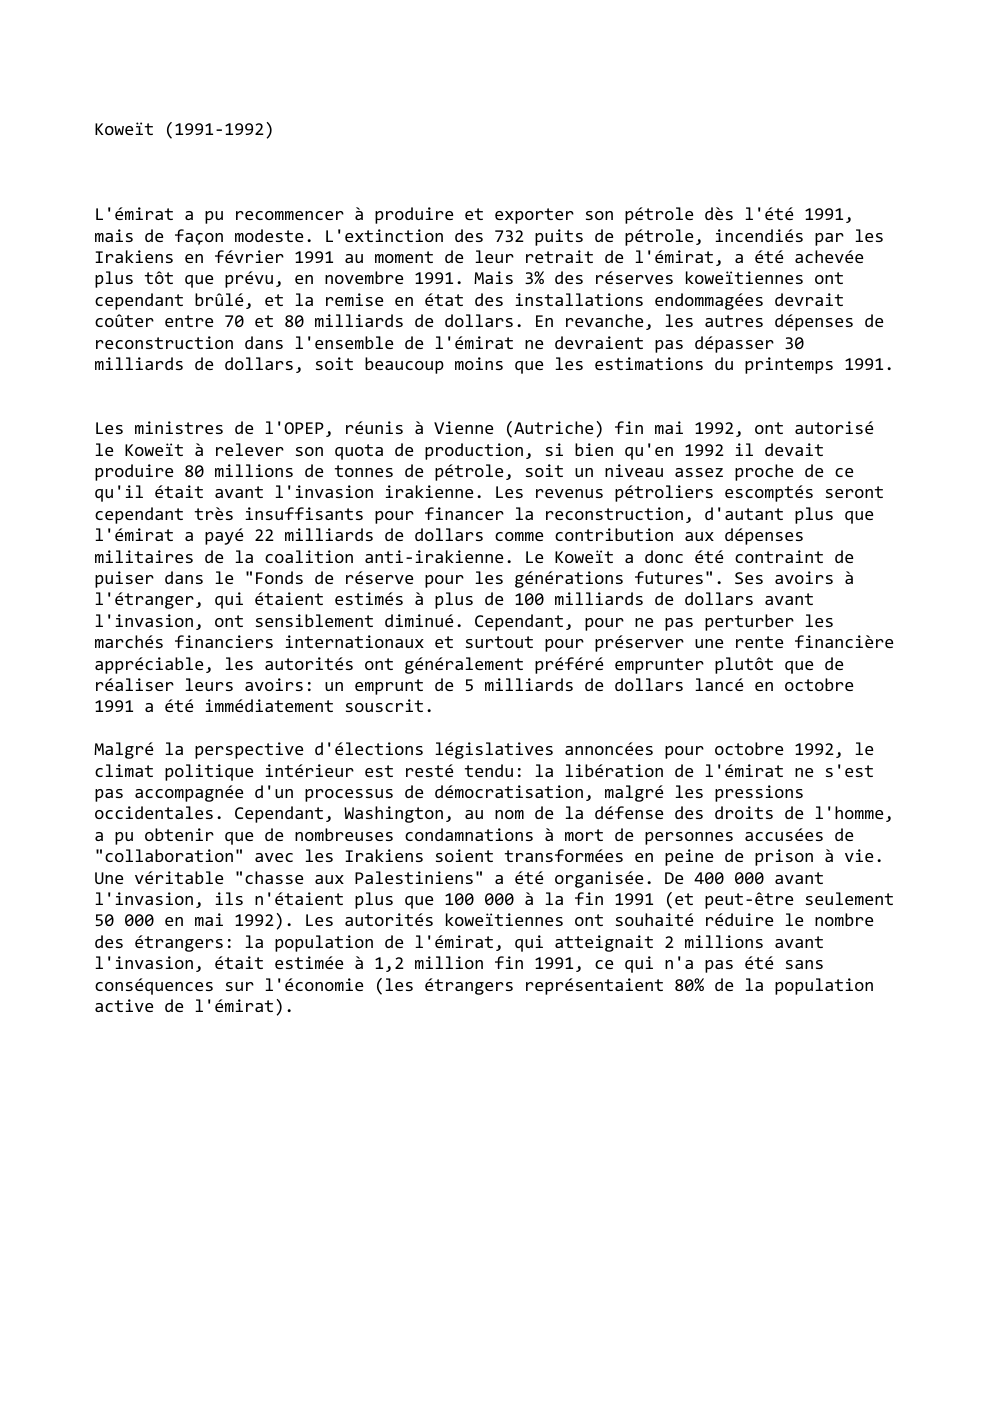 Prévisualisation du document Koweït (1991-1992)

L'émirat a pu recommencer à produire et exporter son pétrole dès l'été 1991,
mais de façon modeste. L'extinction...